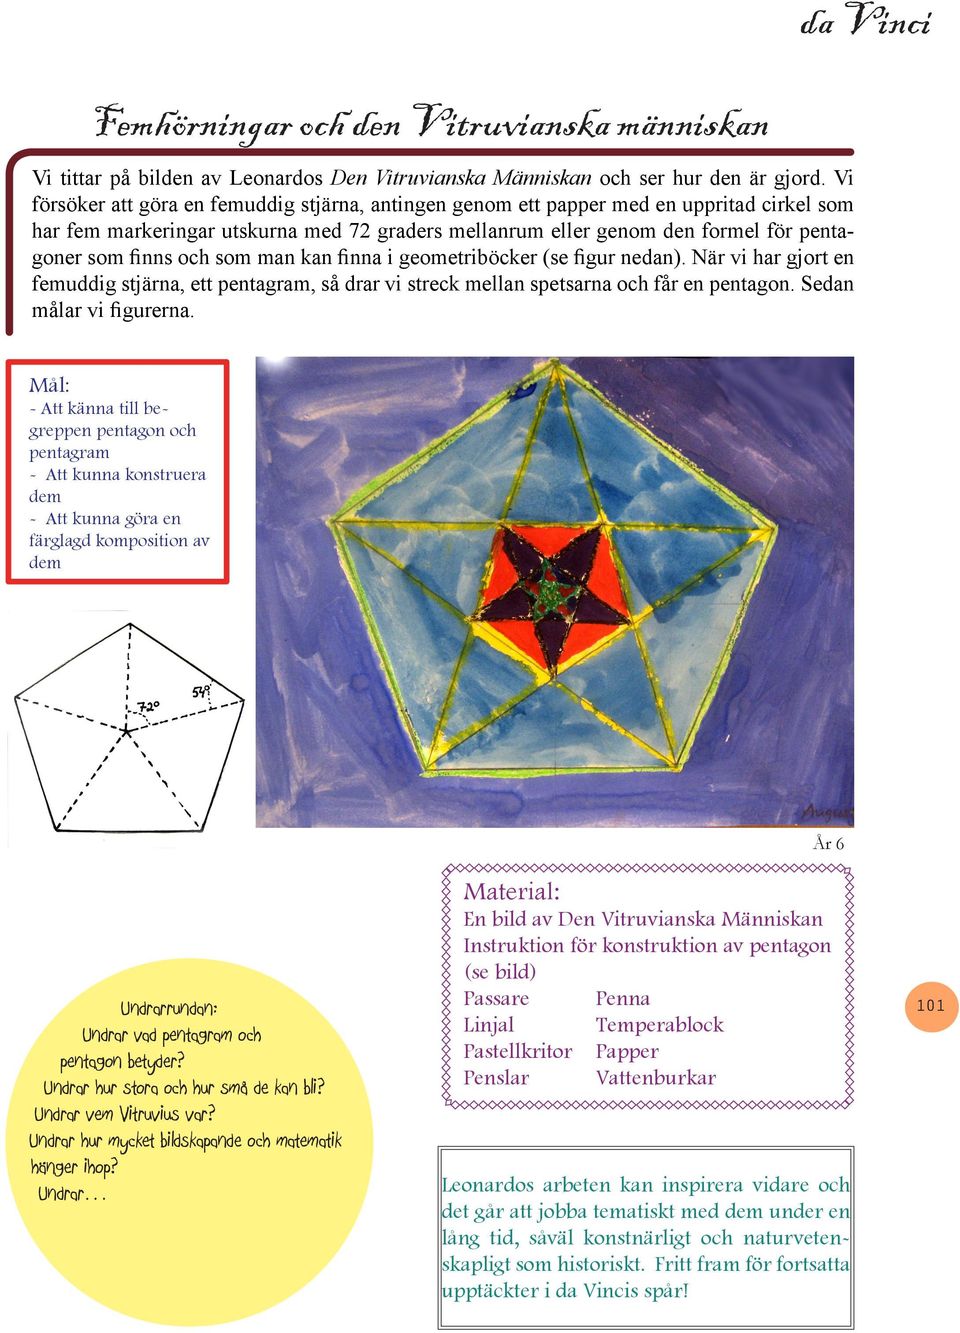 och som man kan finna i geometriböcker (se figur nedan). När vi har gjort en femuddig stjärna, ett pentagram, så drar vi streck mellan spetsarna och får en pentagon. Sedan målar vi figurerna.